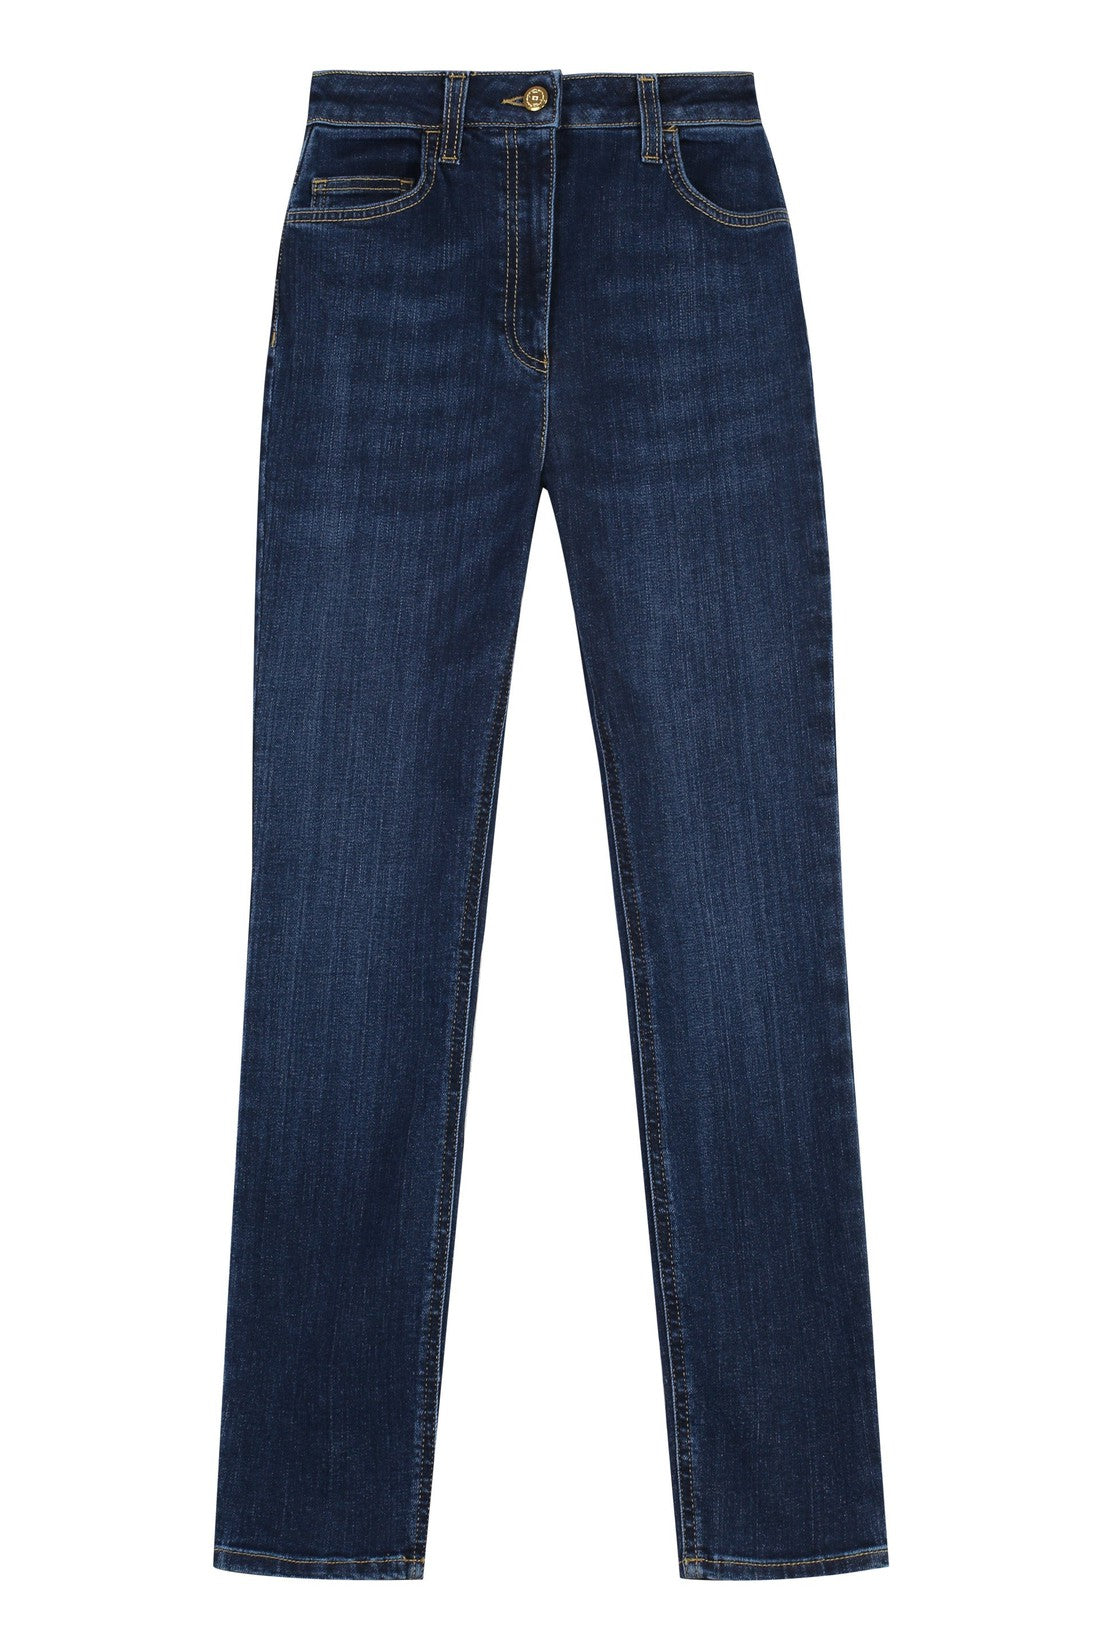 Elisabetta Franchi-OUTLET-SALE-5-pocket skinny jeans-ARCHIVIST